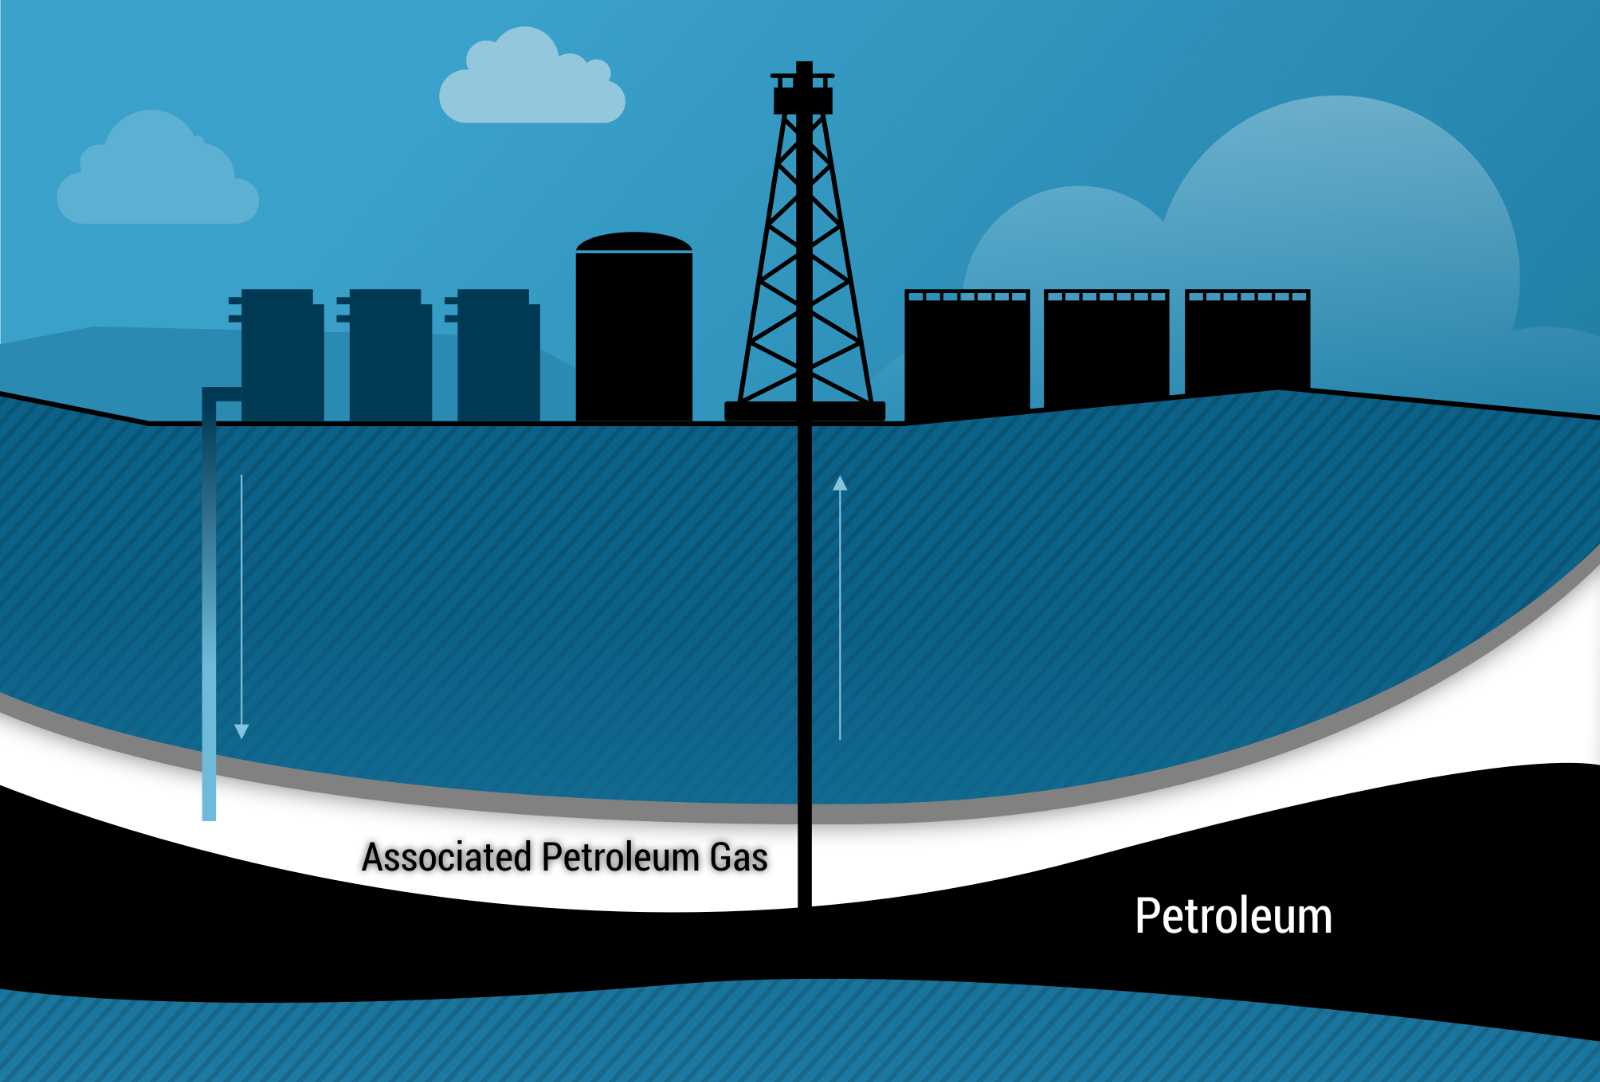 Associated Petroleum Gas (APG)